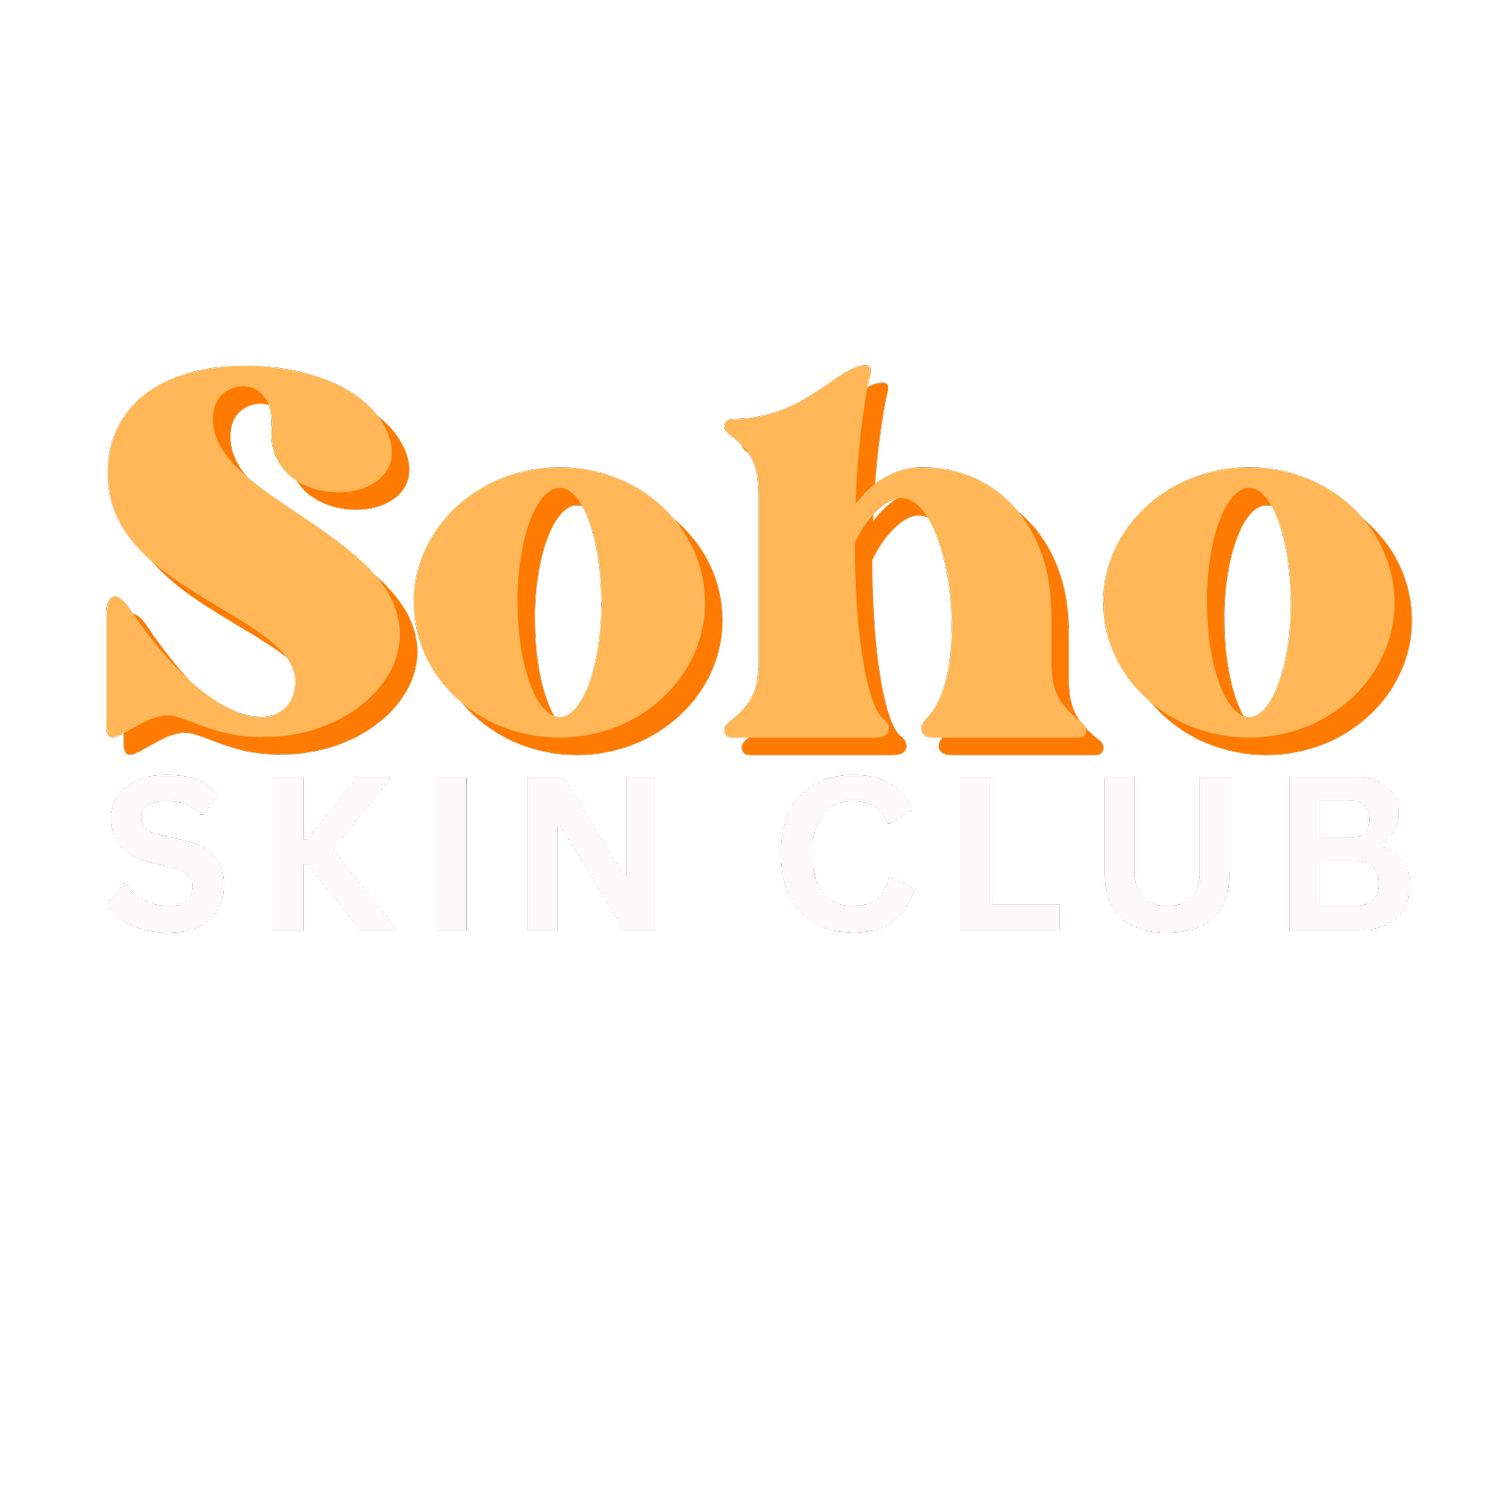 Soho Skin Club